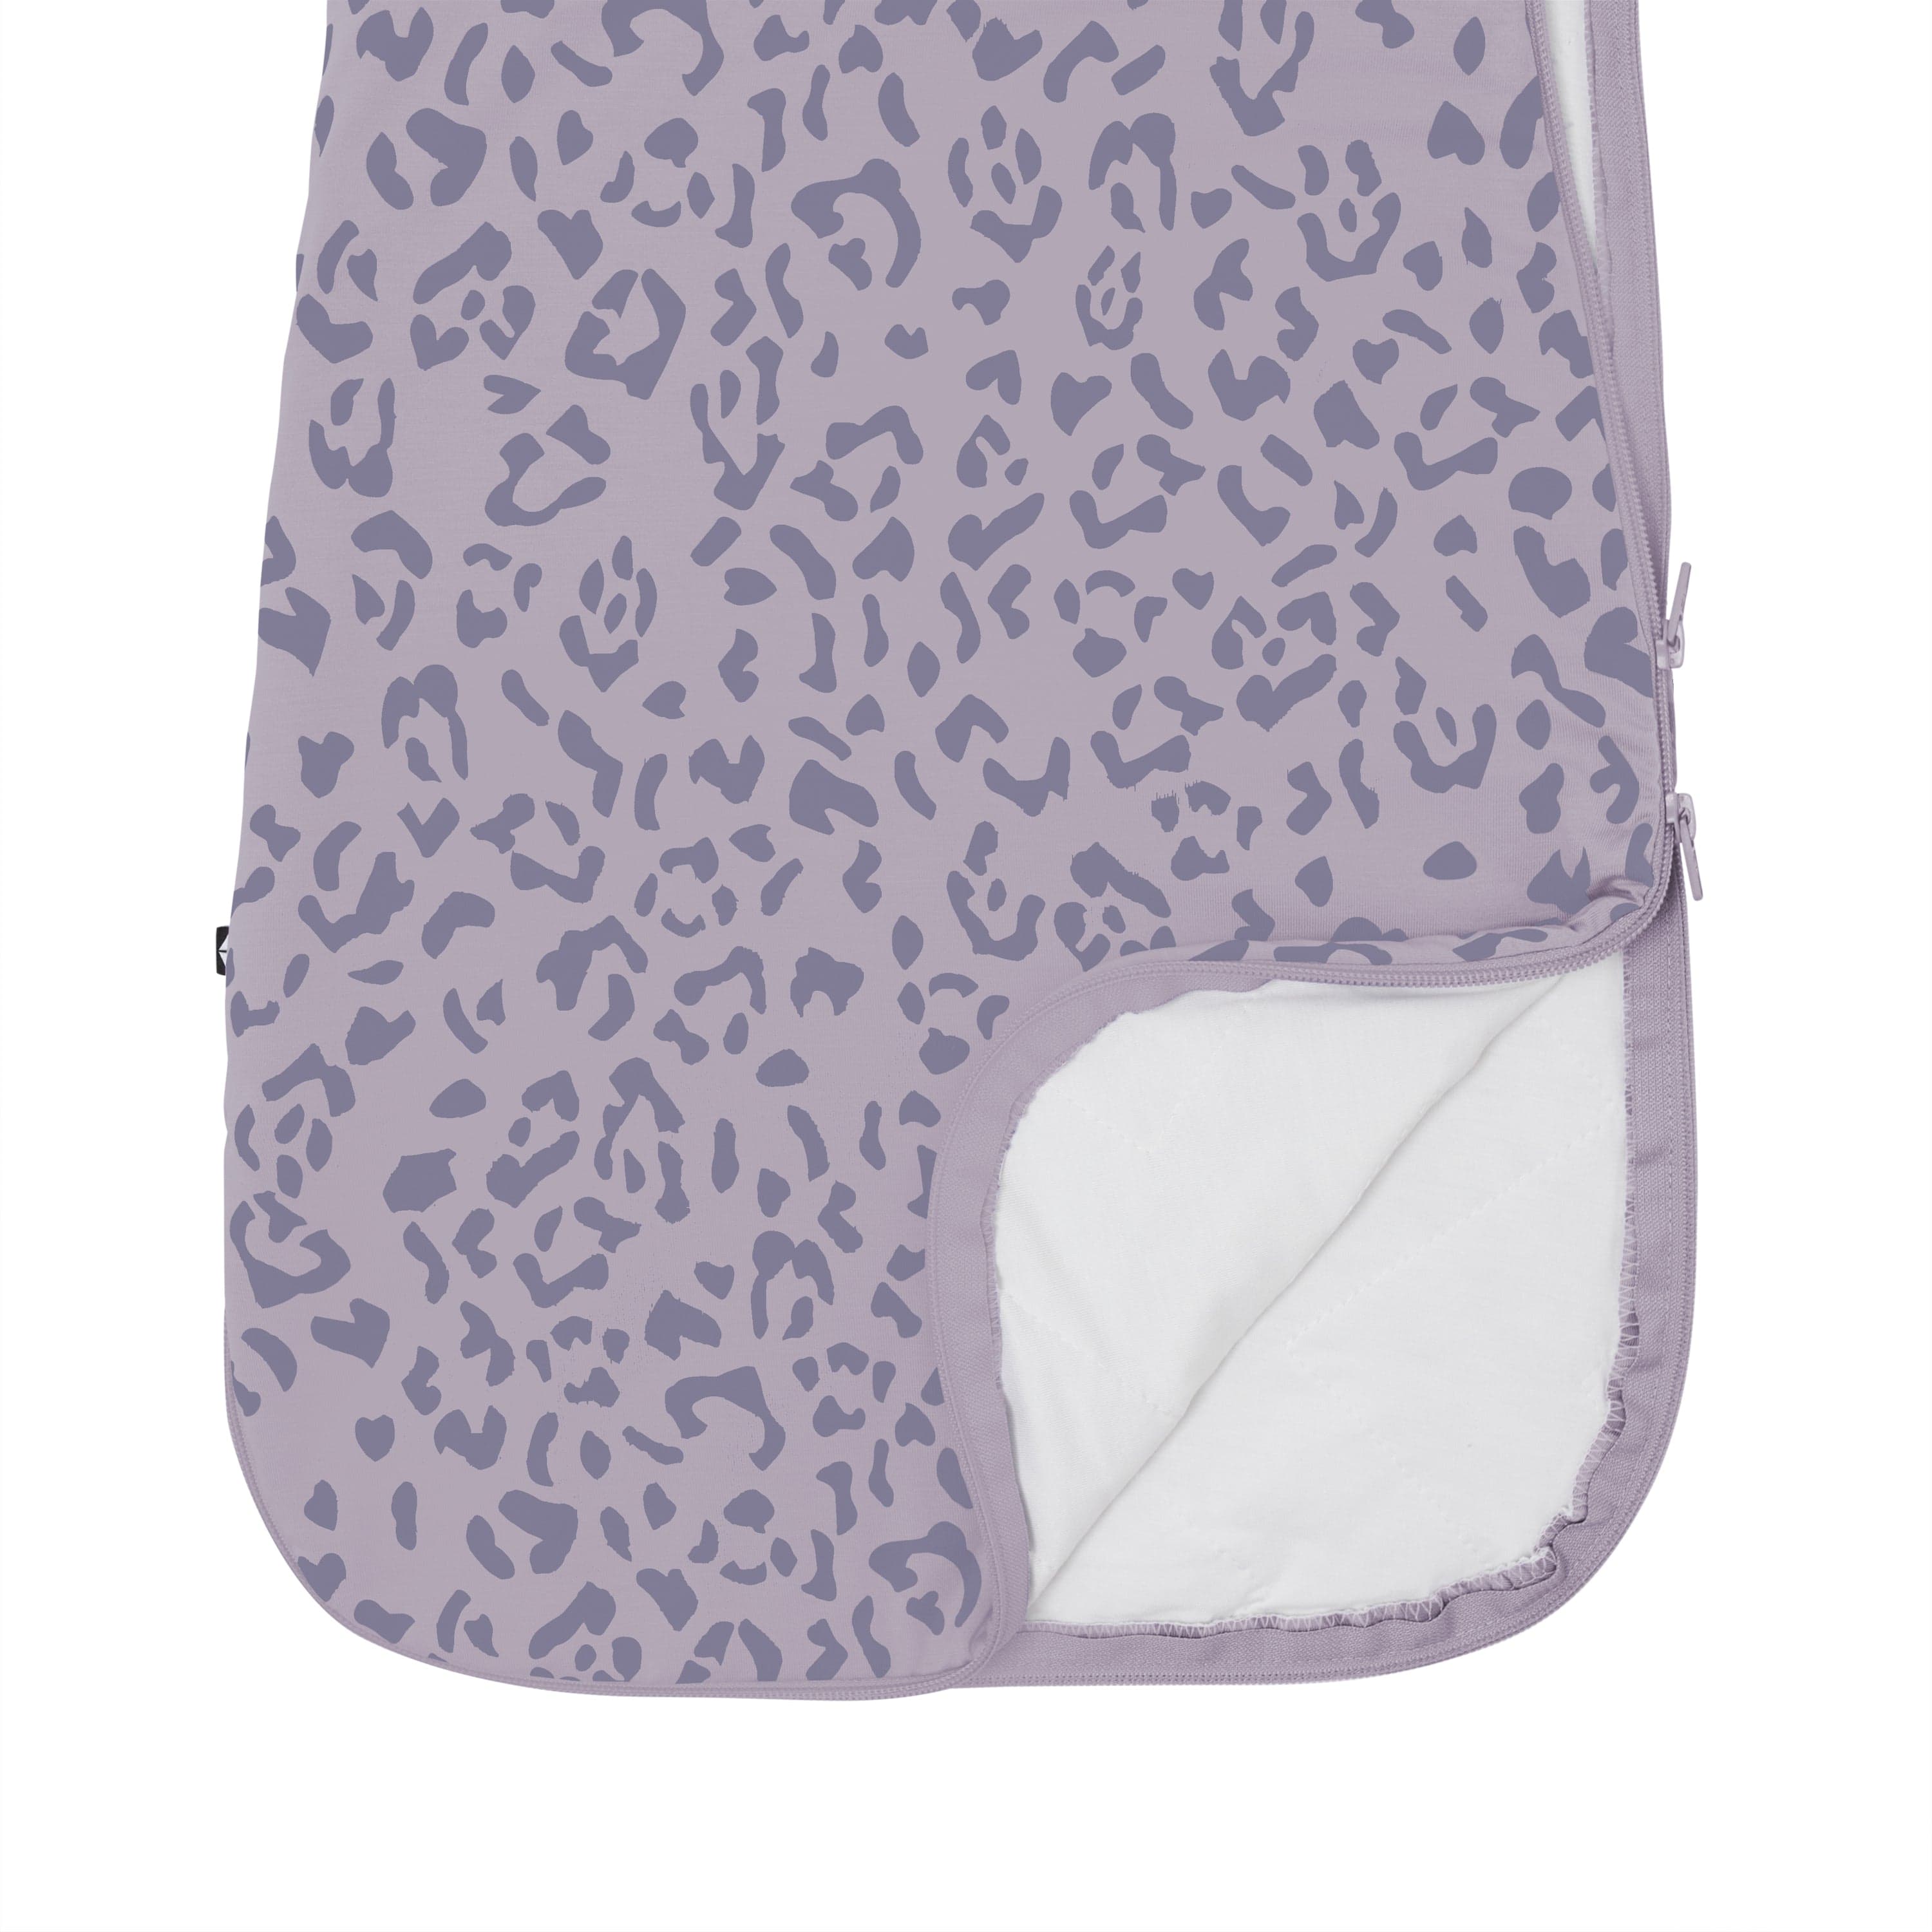 Kyte Baby Sleep Bag 1.0 Tog Sleep Bag in Taro Leopard 1.0